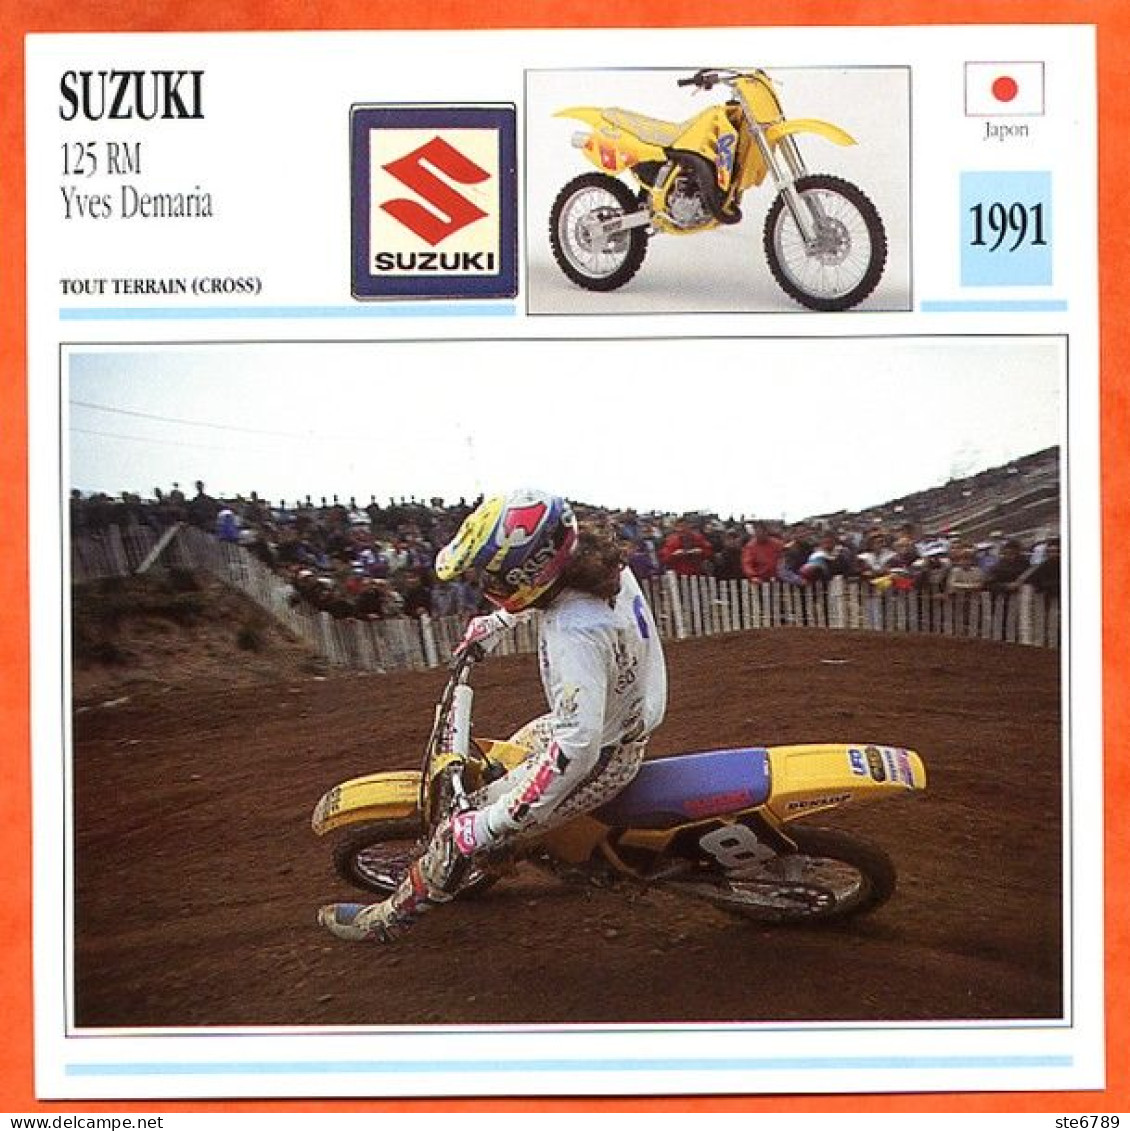 SUZUKI 125 RM Yves Demaria 1991 Japon Fiche Technique Moto - Sports